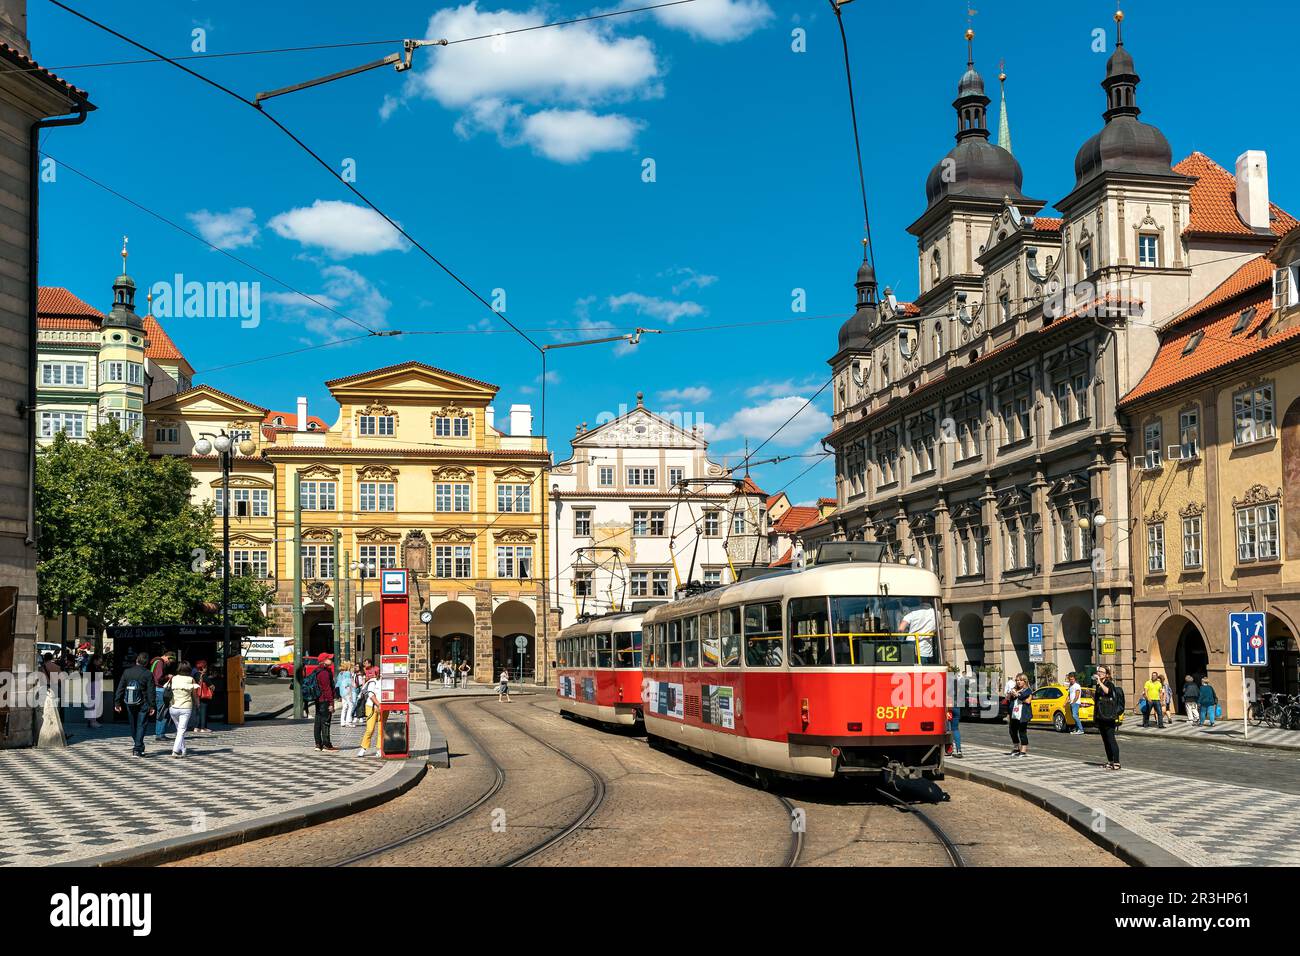 Menschen und typische Straßenbahn auf der Straße zwischen historischen Gebäuden in der Altstadt von Prag, Tschechische Republik. Stockfoto